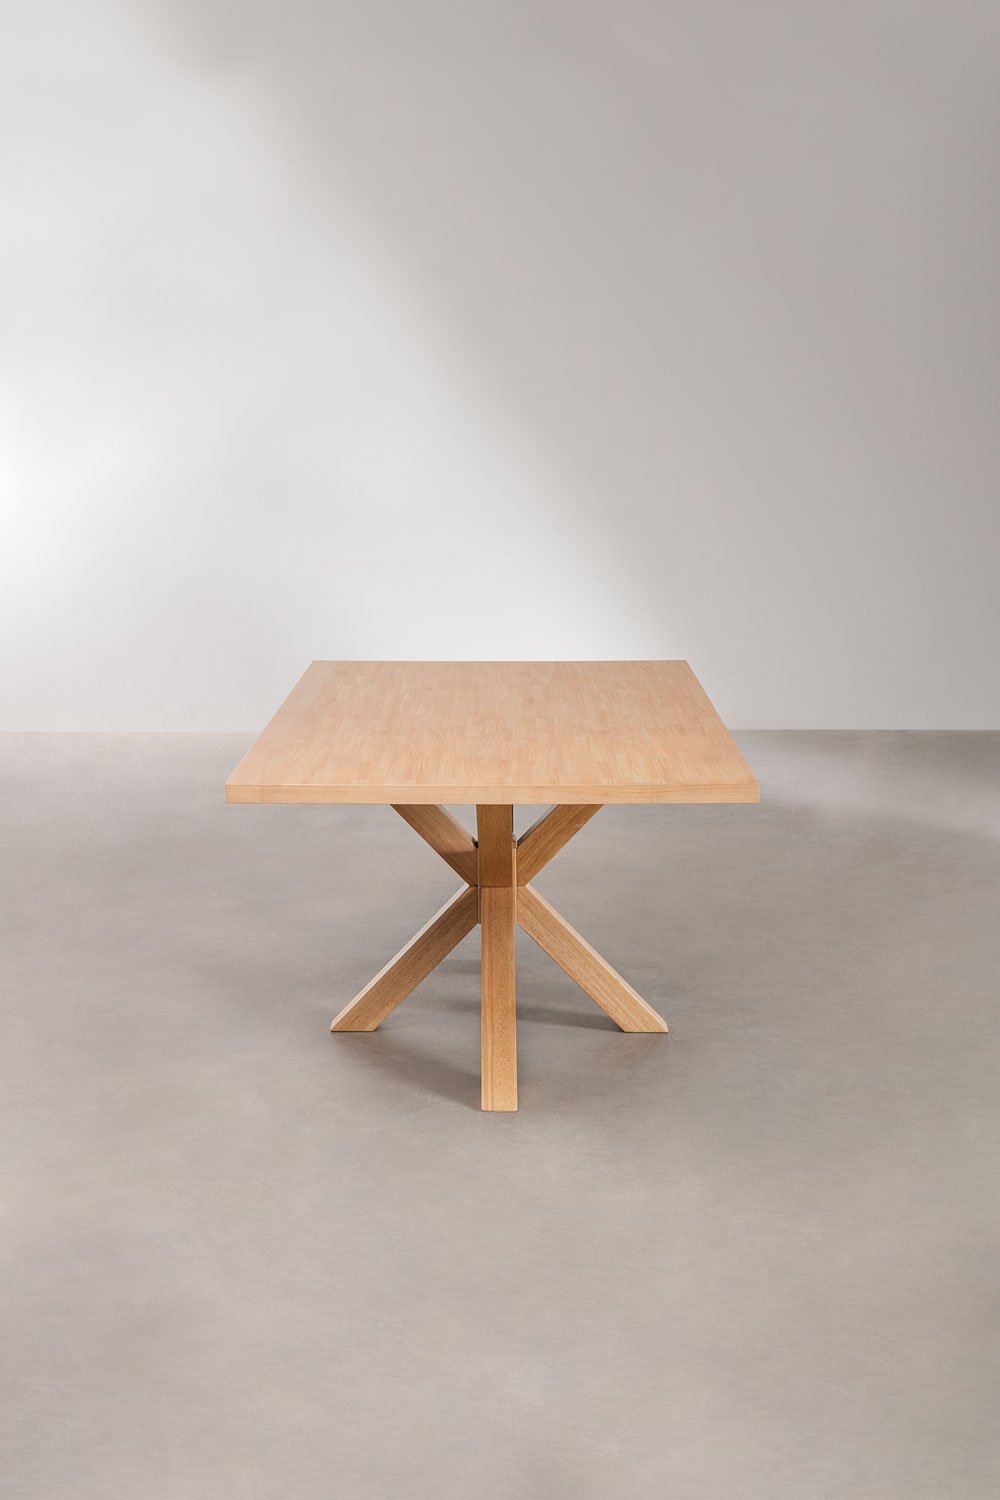 Table à manger ronde en MDF (Ø140 cm) Pleven - SKLUM